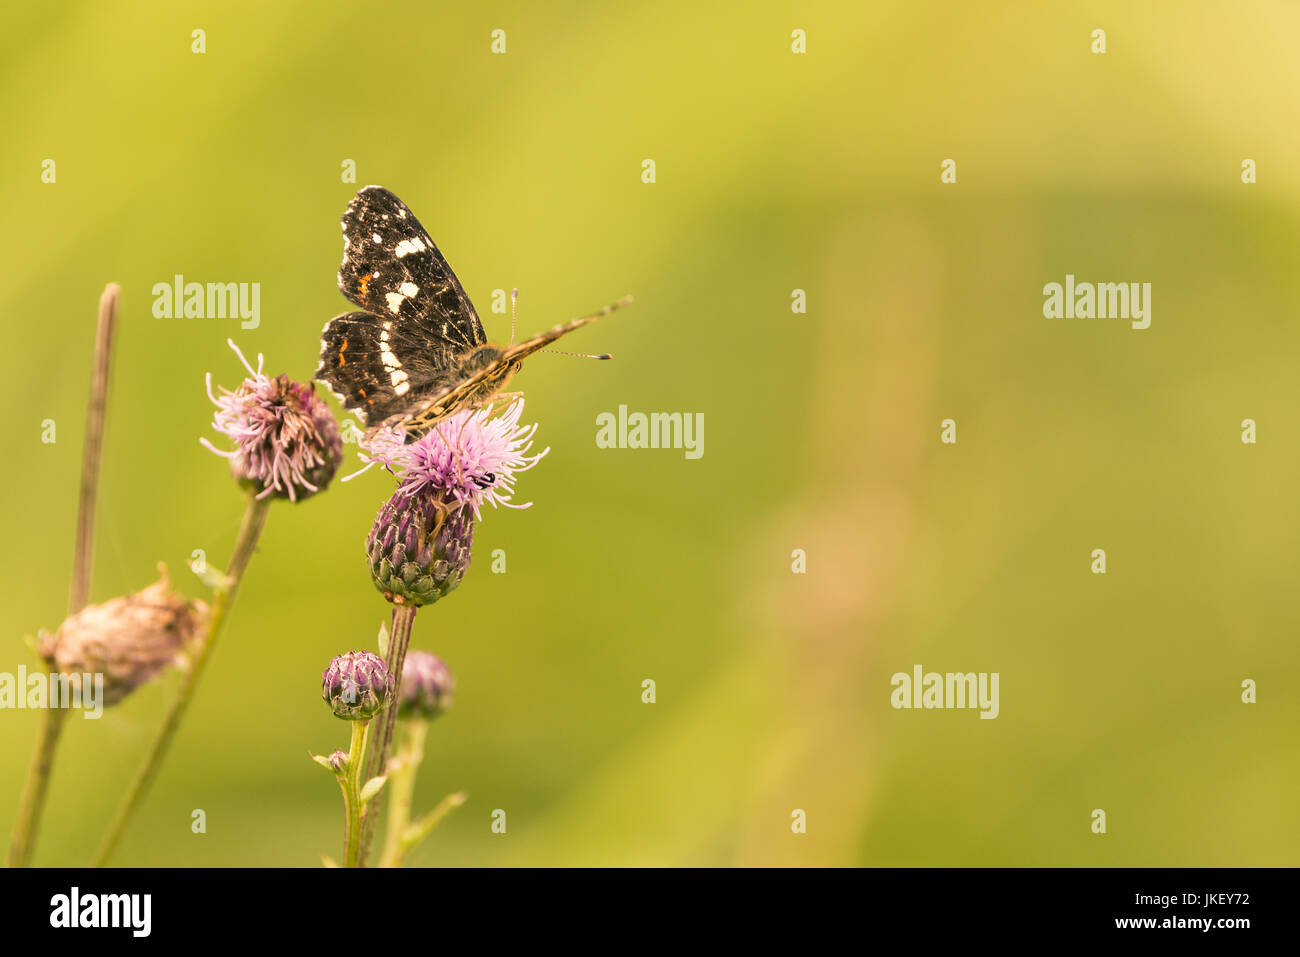 Foto verticale della singola farfalla nero con strisce bianche sulle ali. L'insetto è arroccato sulla luce viola o rosa fioritura della pianta di cardo. Il ba Foto Stock